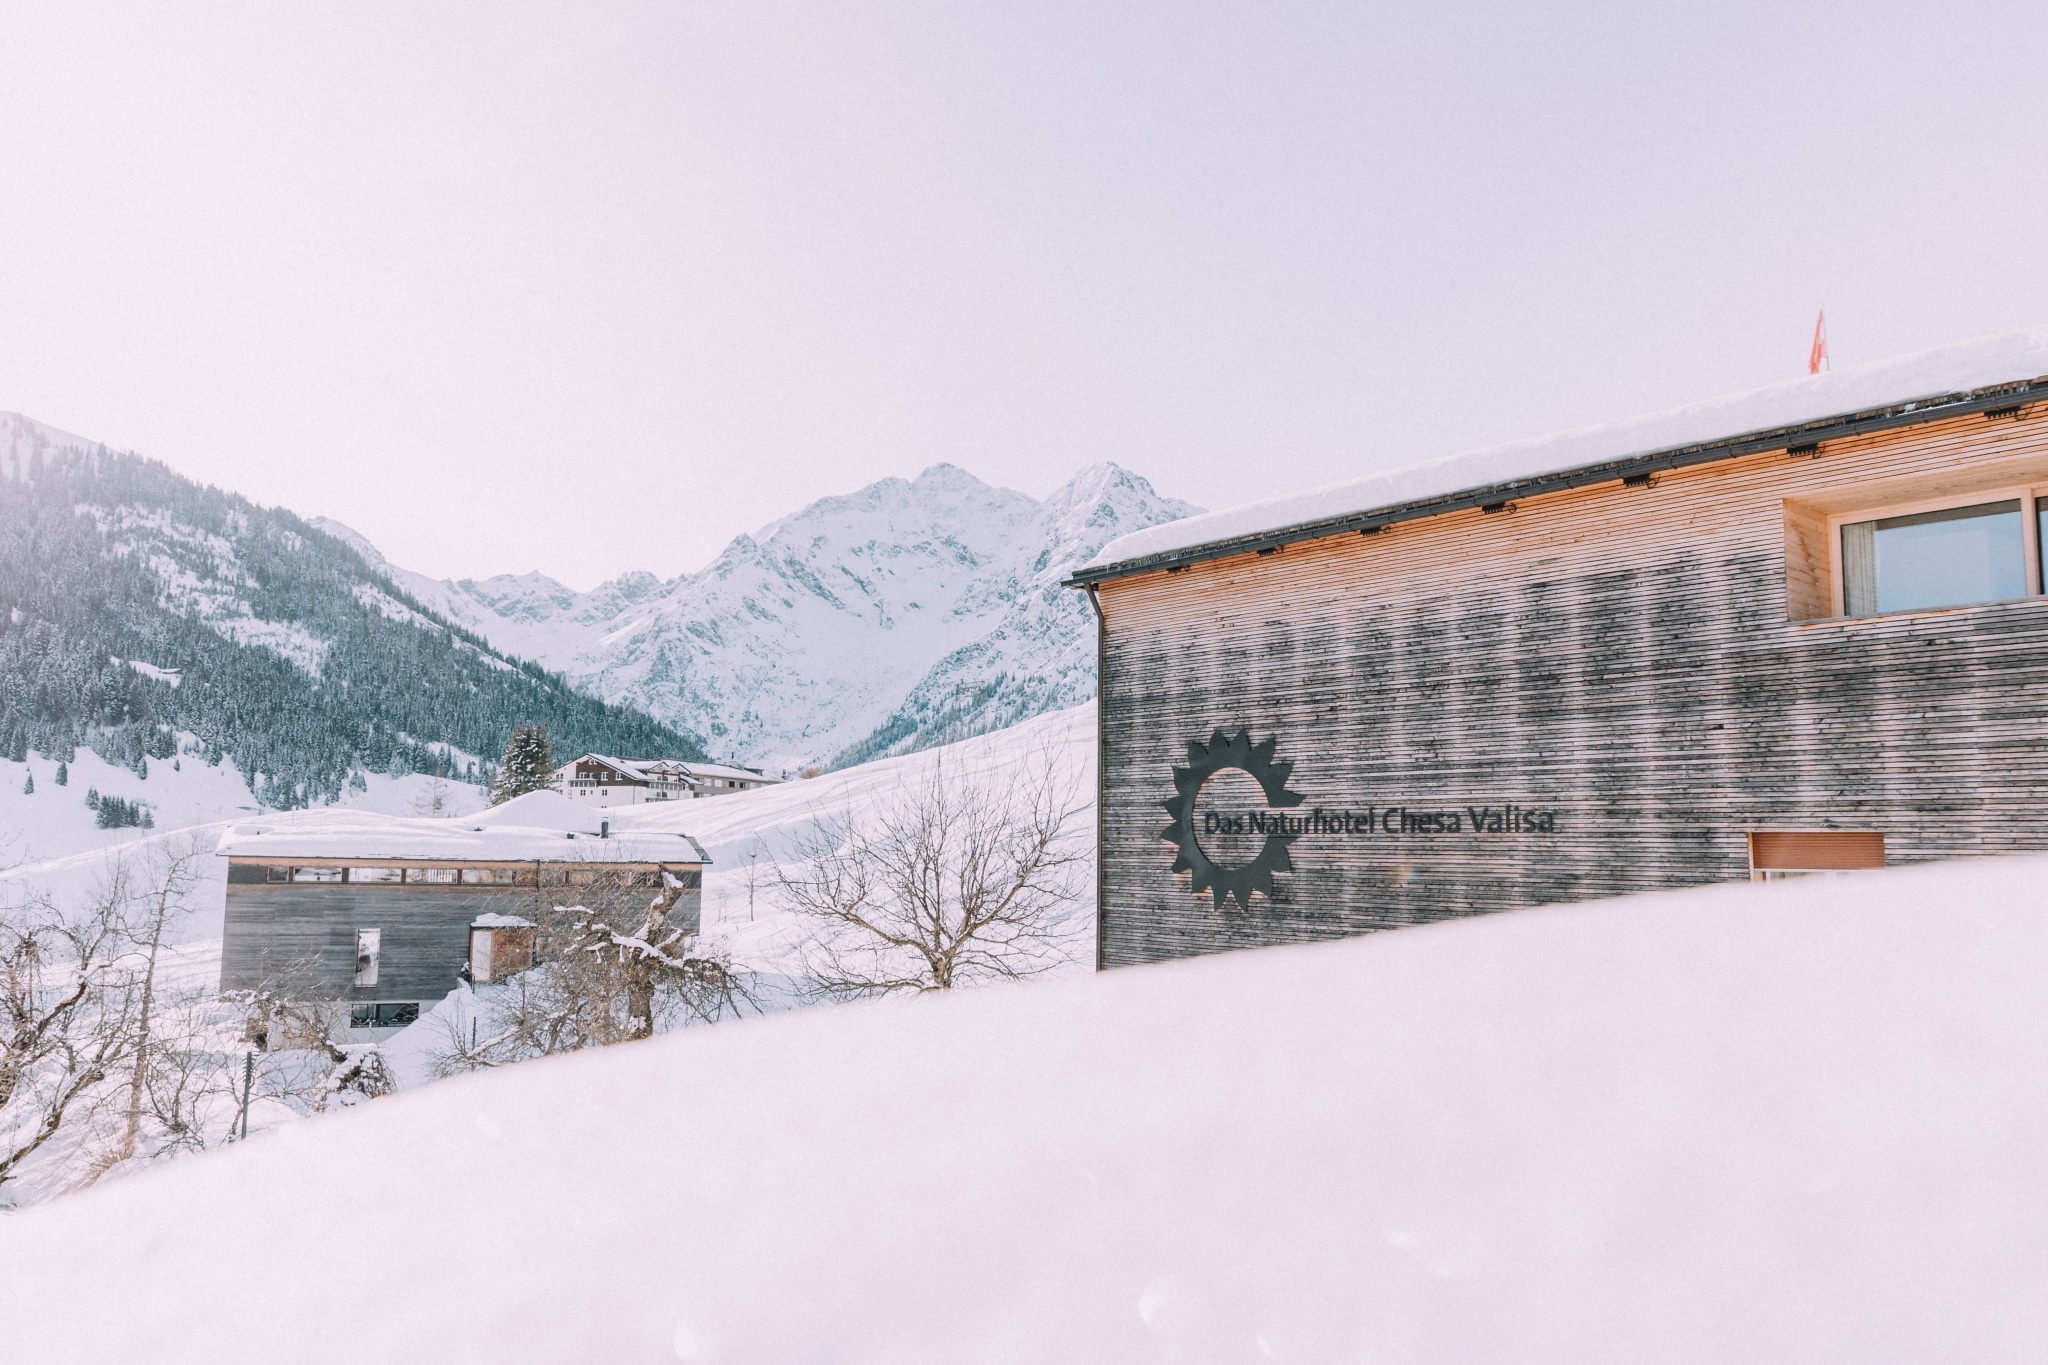 Haus Chesa fotografiert über Schneeberg, im Hintergrund weiße Berge